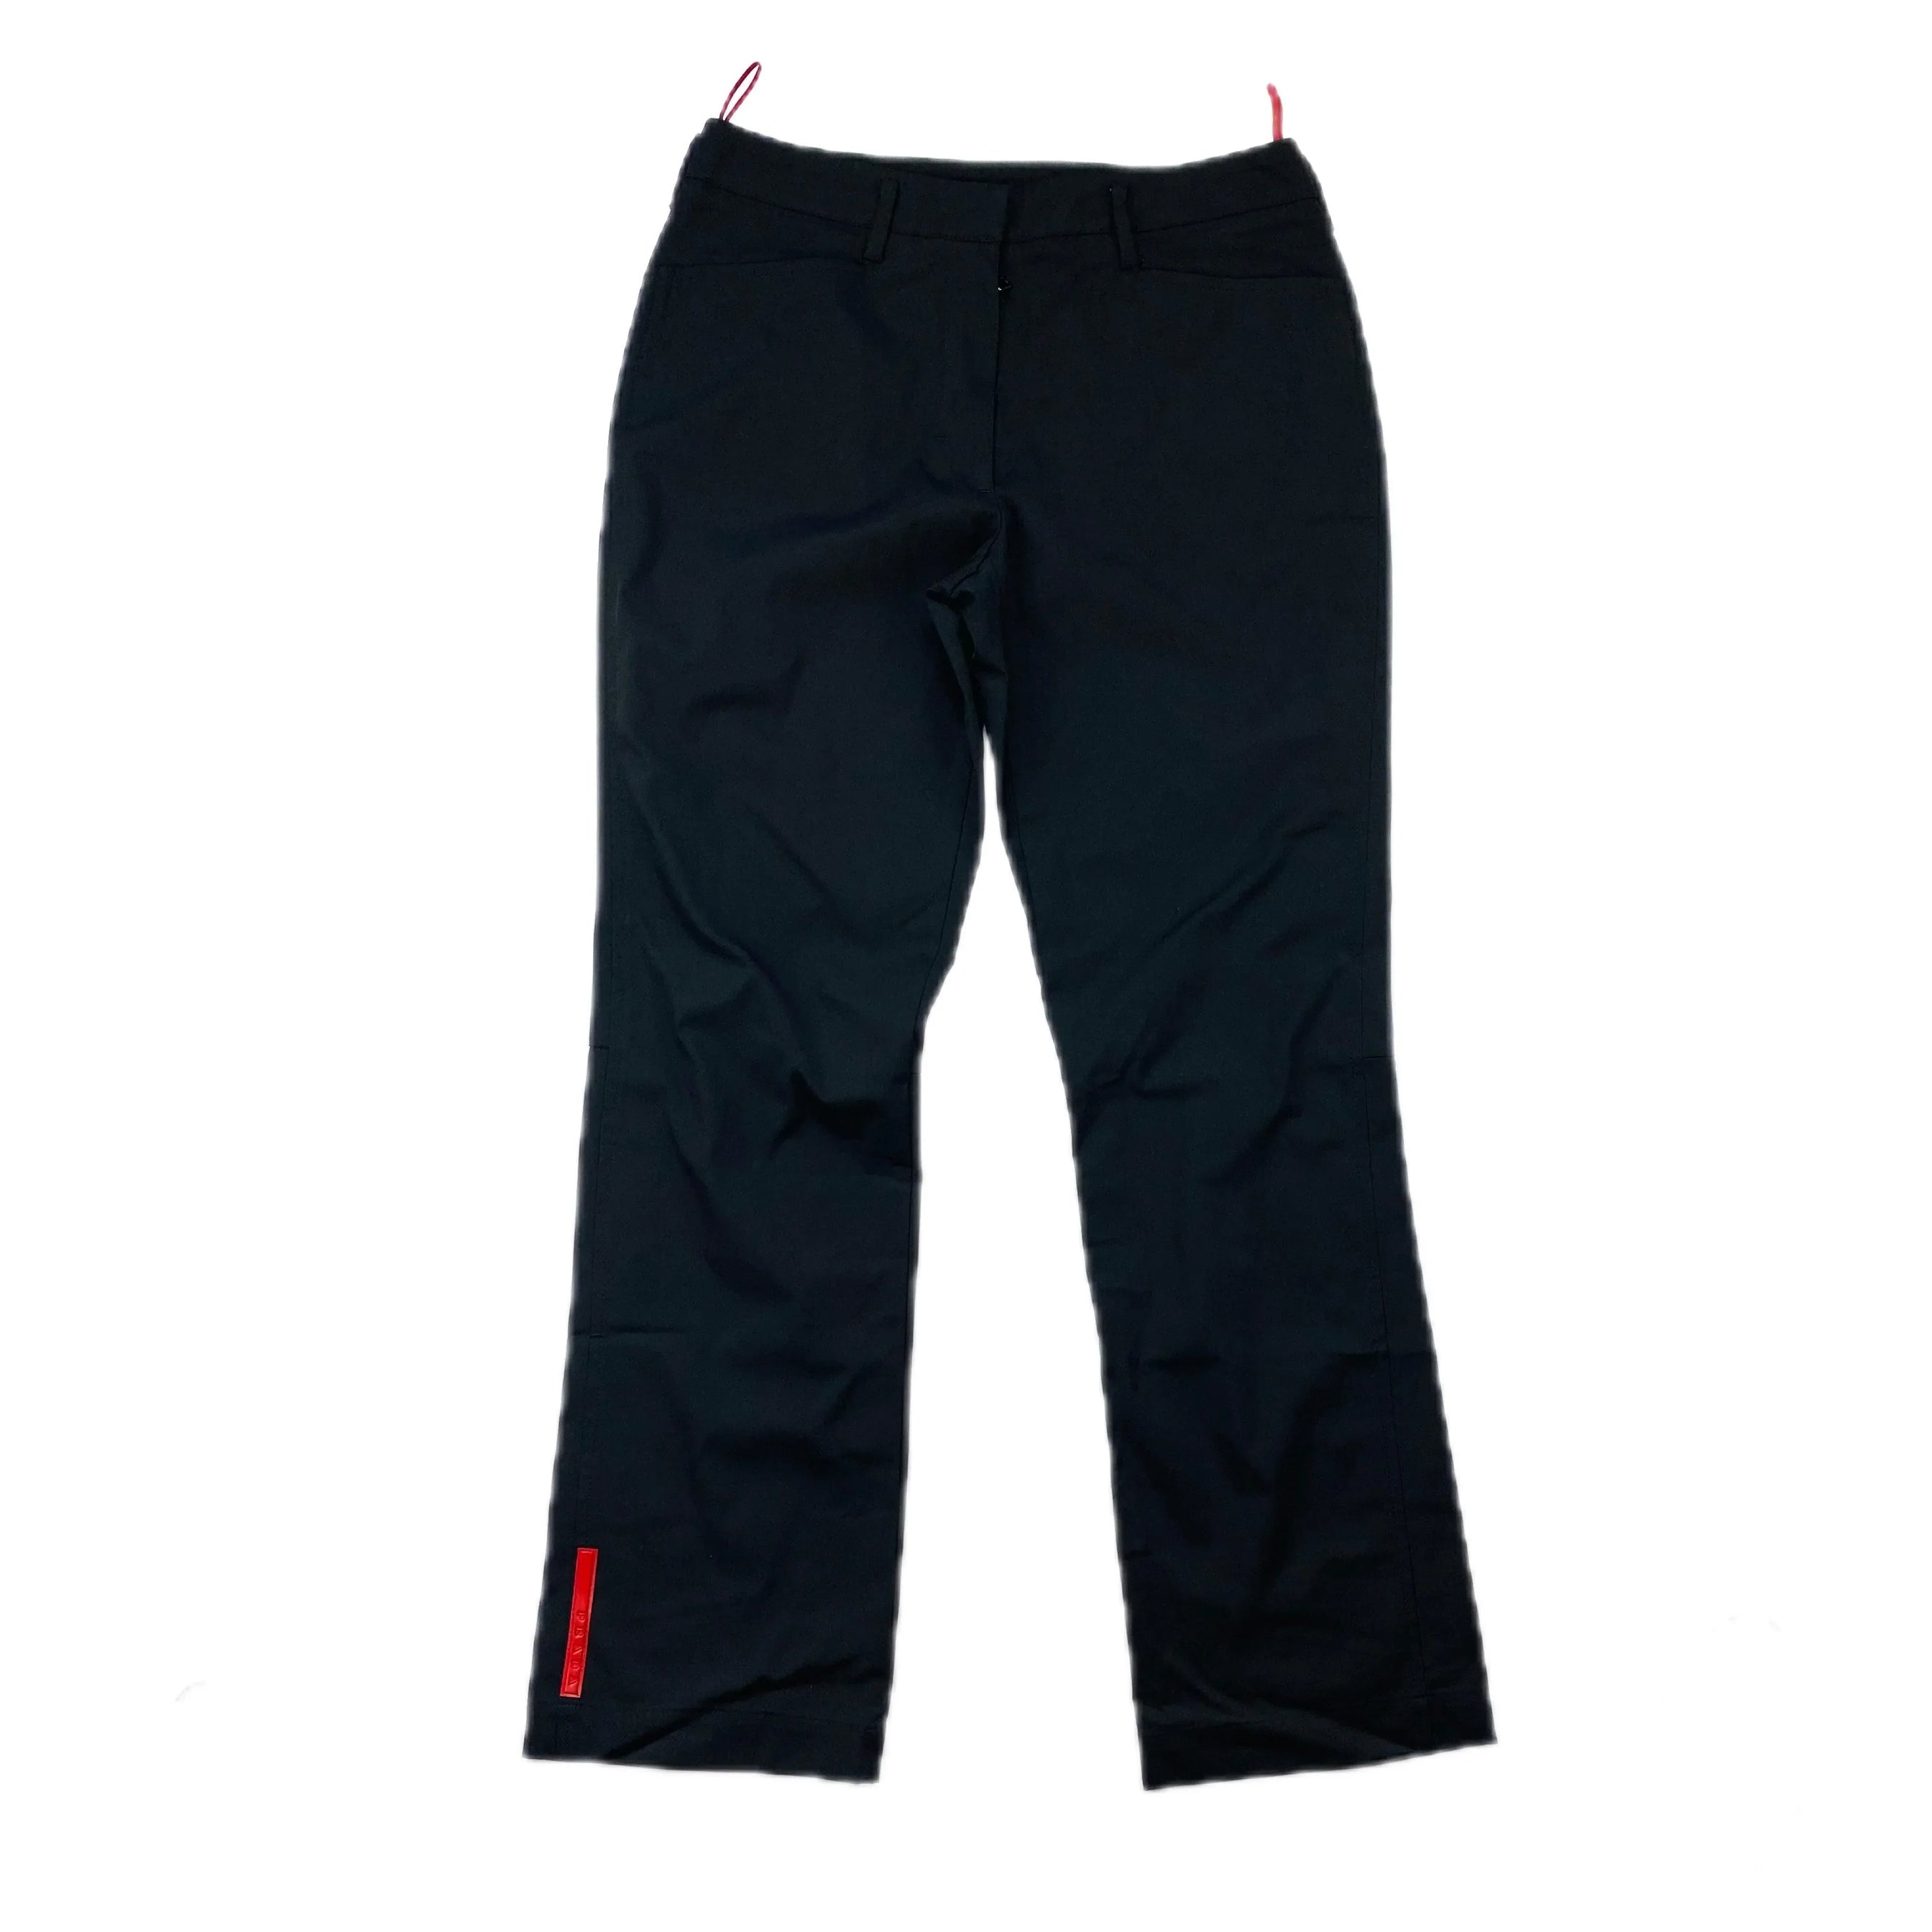 Black/black Sweatpants With Re-nylon Details